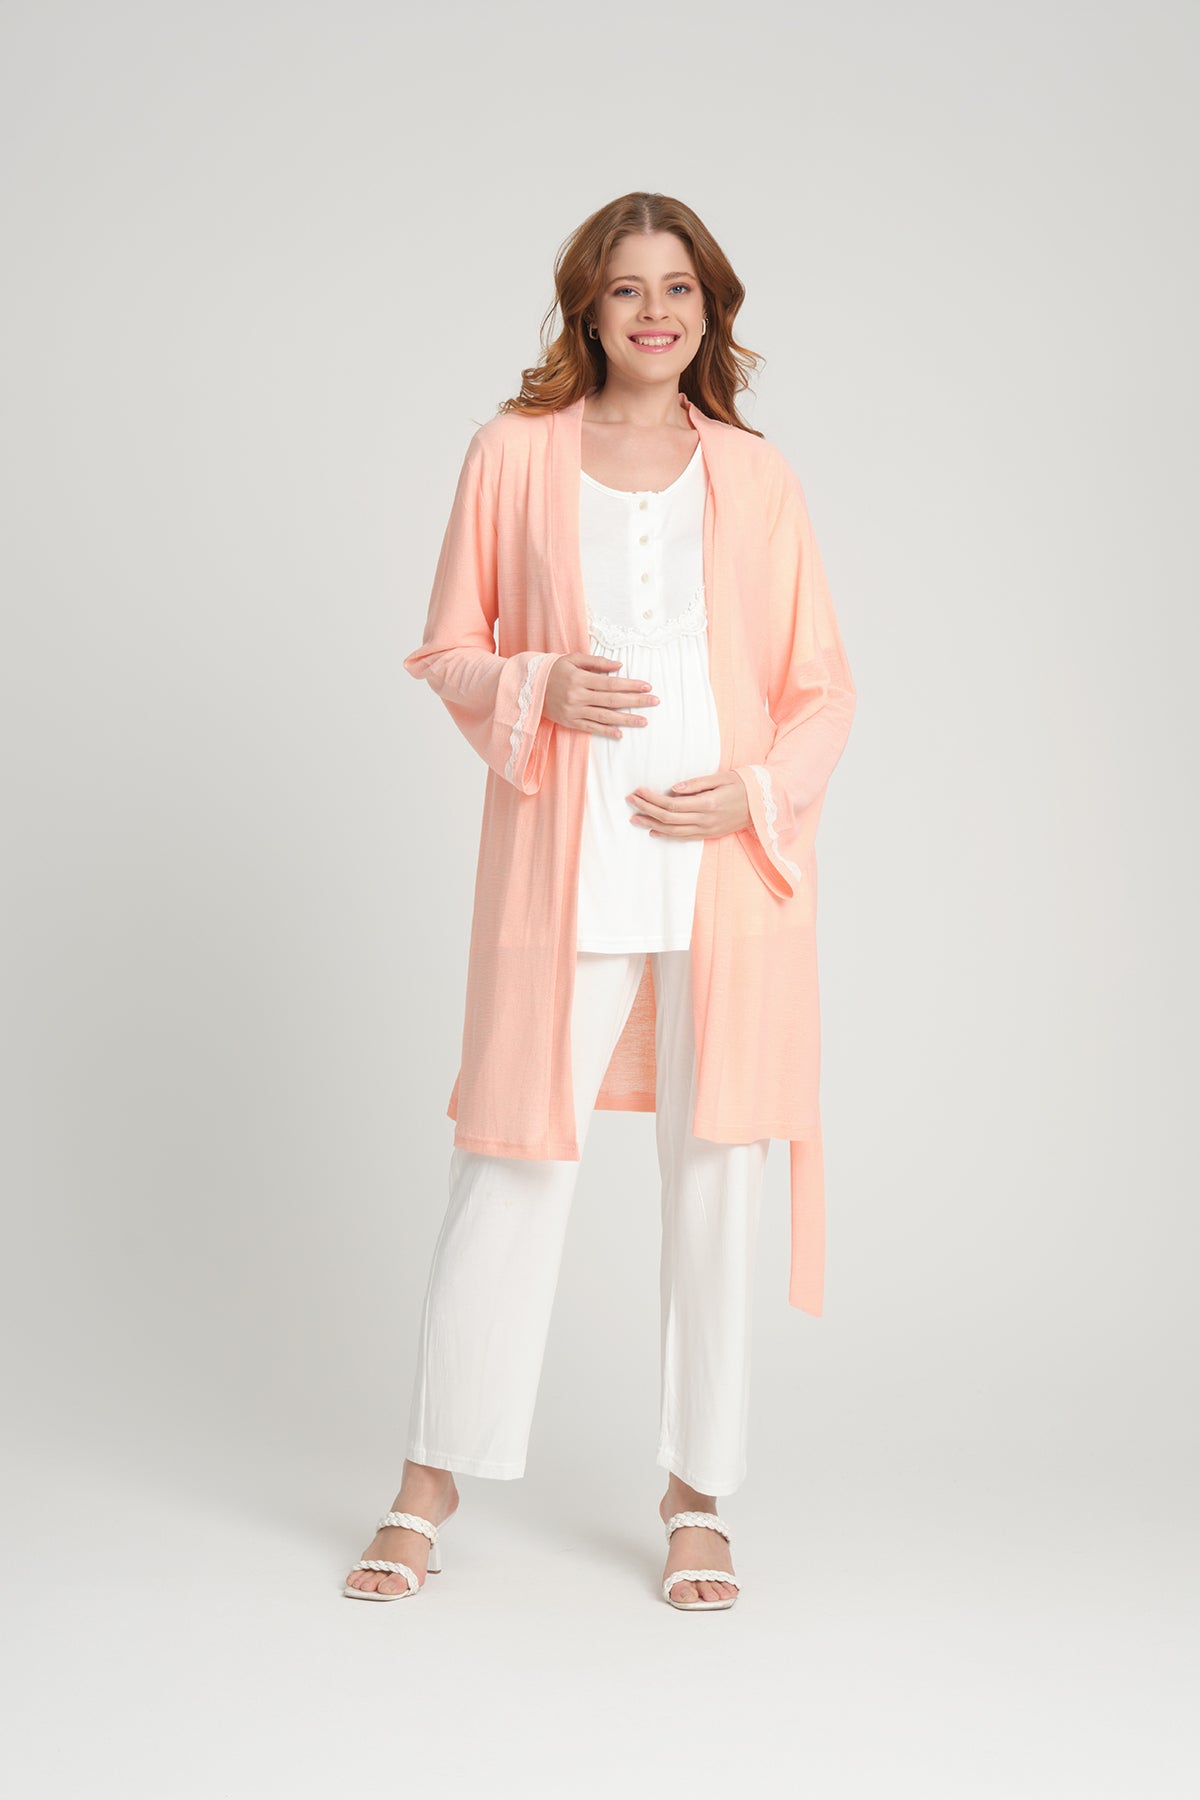 Lace 3-Pieces Maternity & Nursing Pajamas With Robe Salmon - 207